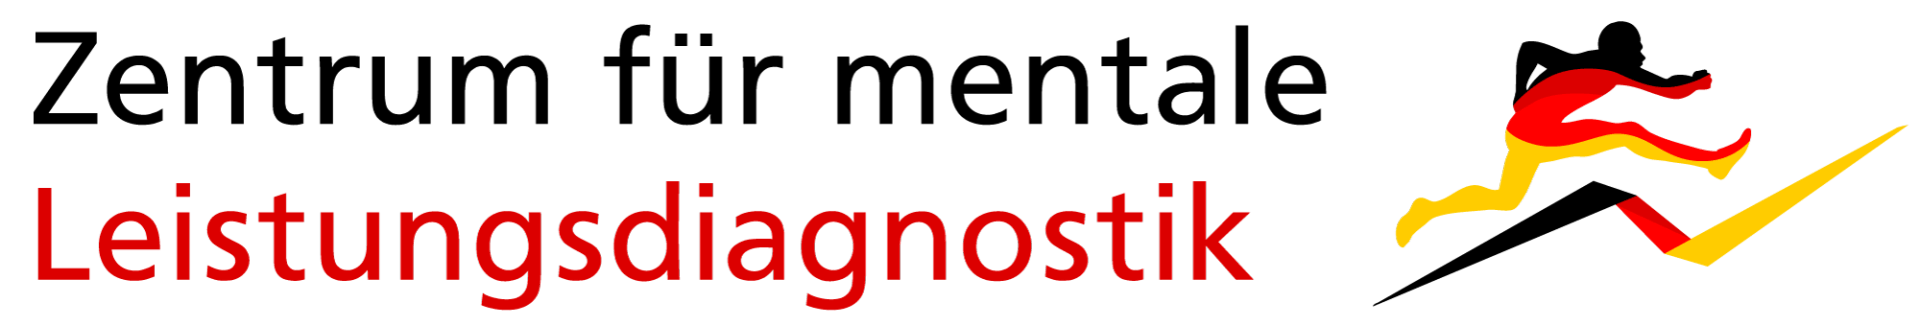 Zentrum für mentale Leistungsdiagnostik Logo